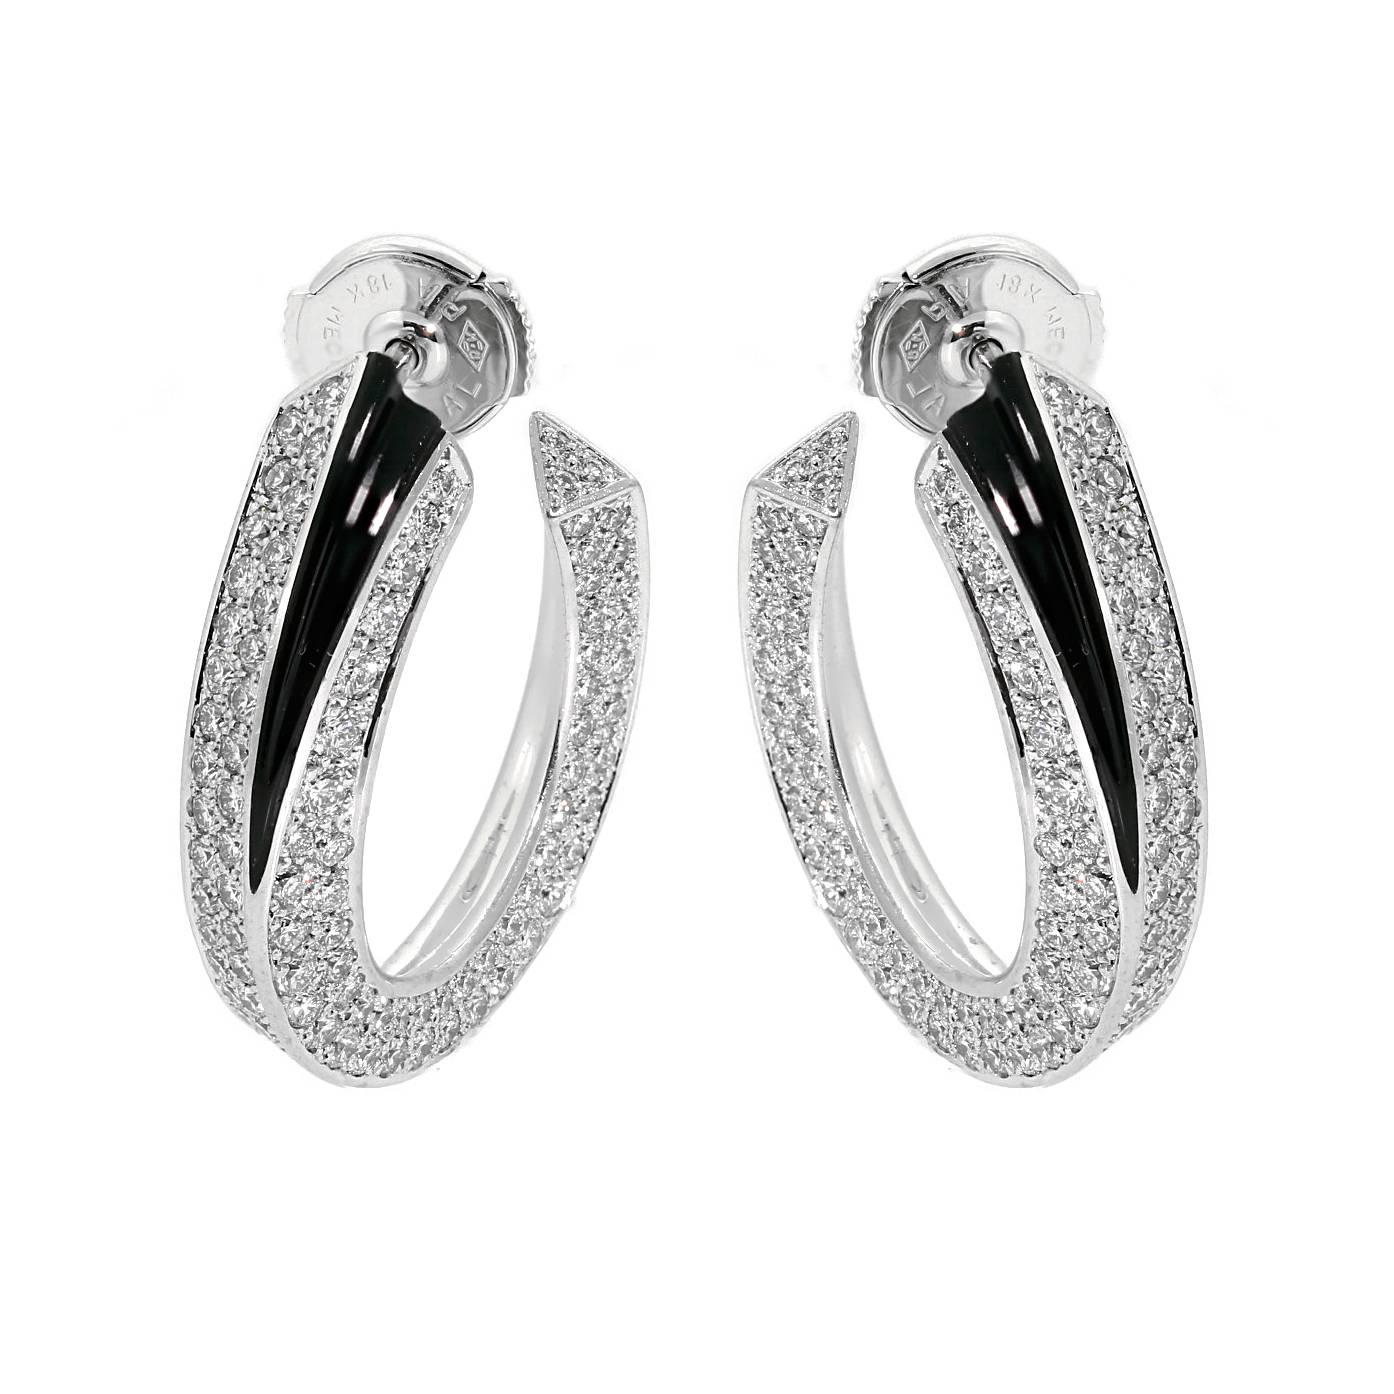 Ein prächtiges Paar Cartier Panthere-Ohrringe, geschmückt mit ca. 5 ct. feinster runder Cartier-Diamanten im Brillantschliff, gefasst in 18 Karat Weißgold.

Ohrring Breite: .25